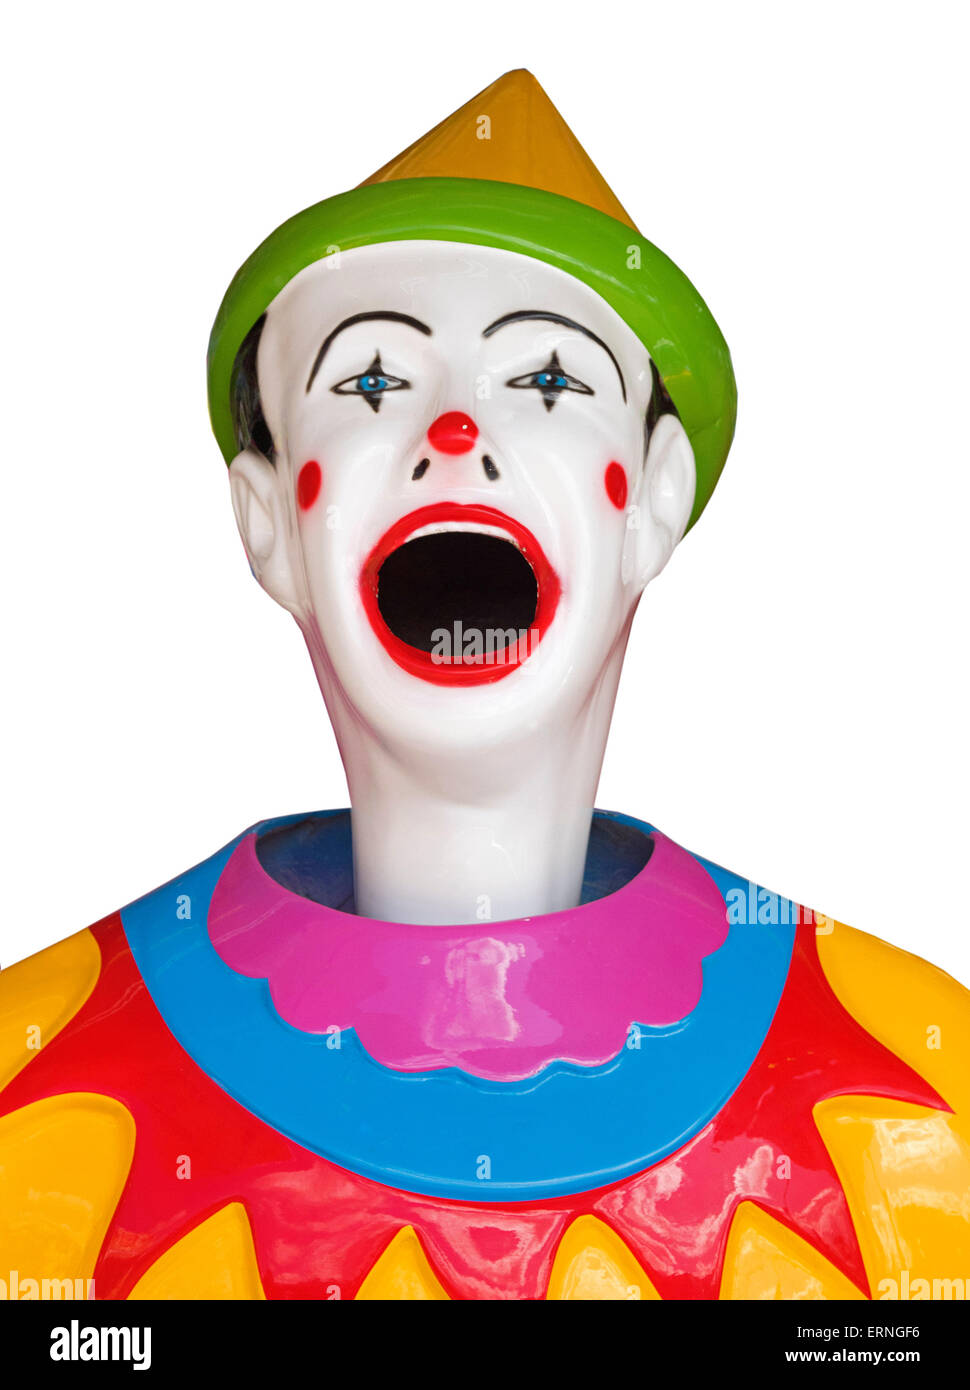 Gesicht von Sideshow Clown mit Mund weit offen, weiße Lachen glückliches Gesicht, farbenfrohe Kleidung und Hut vor weißem Hintergrund Stockfoto